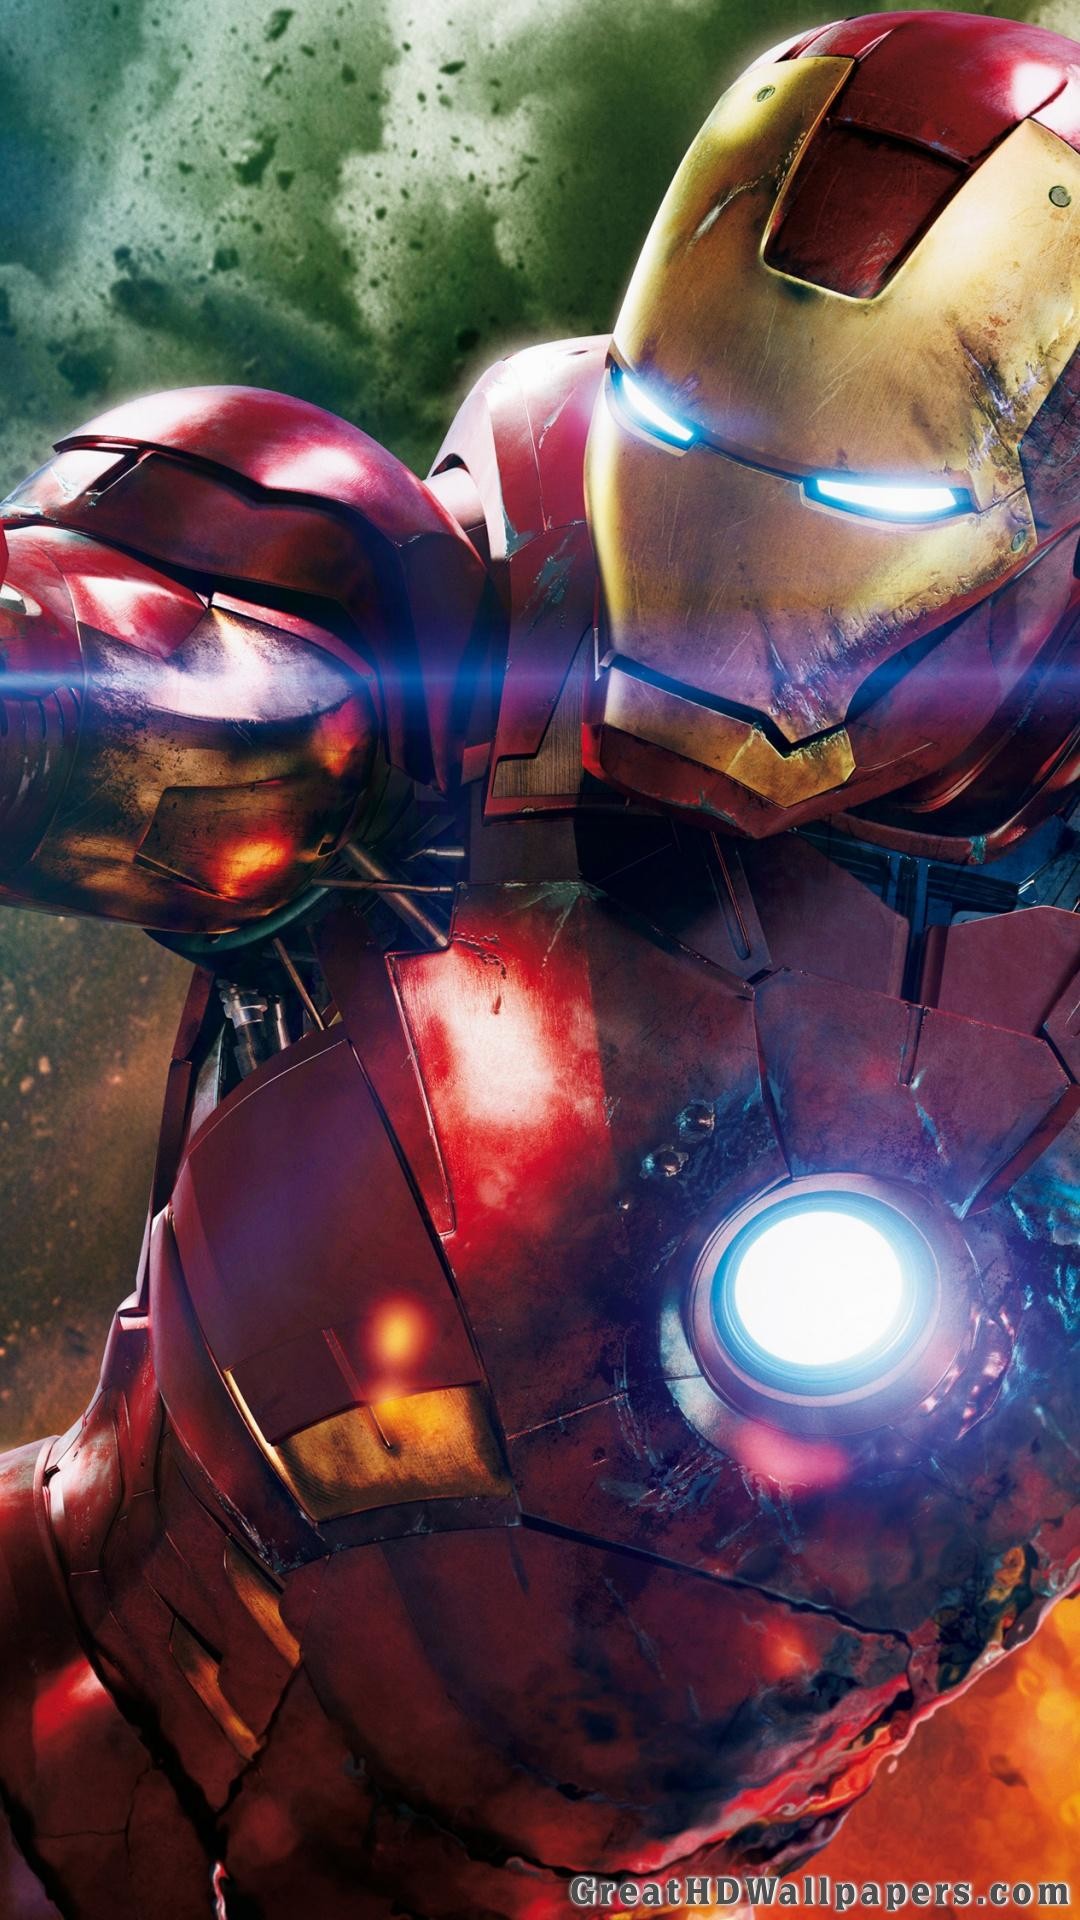 Data-src - Iron Man Wallpaper 4k - HD Wallpaper 